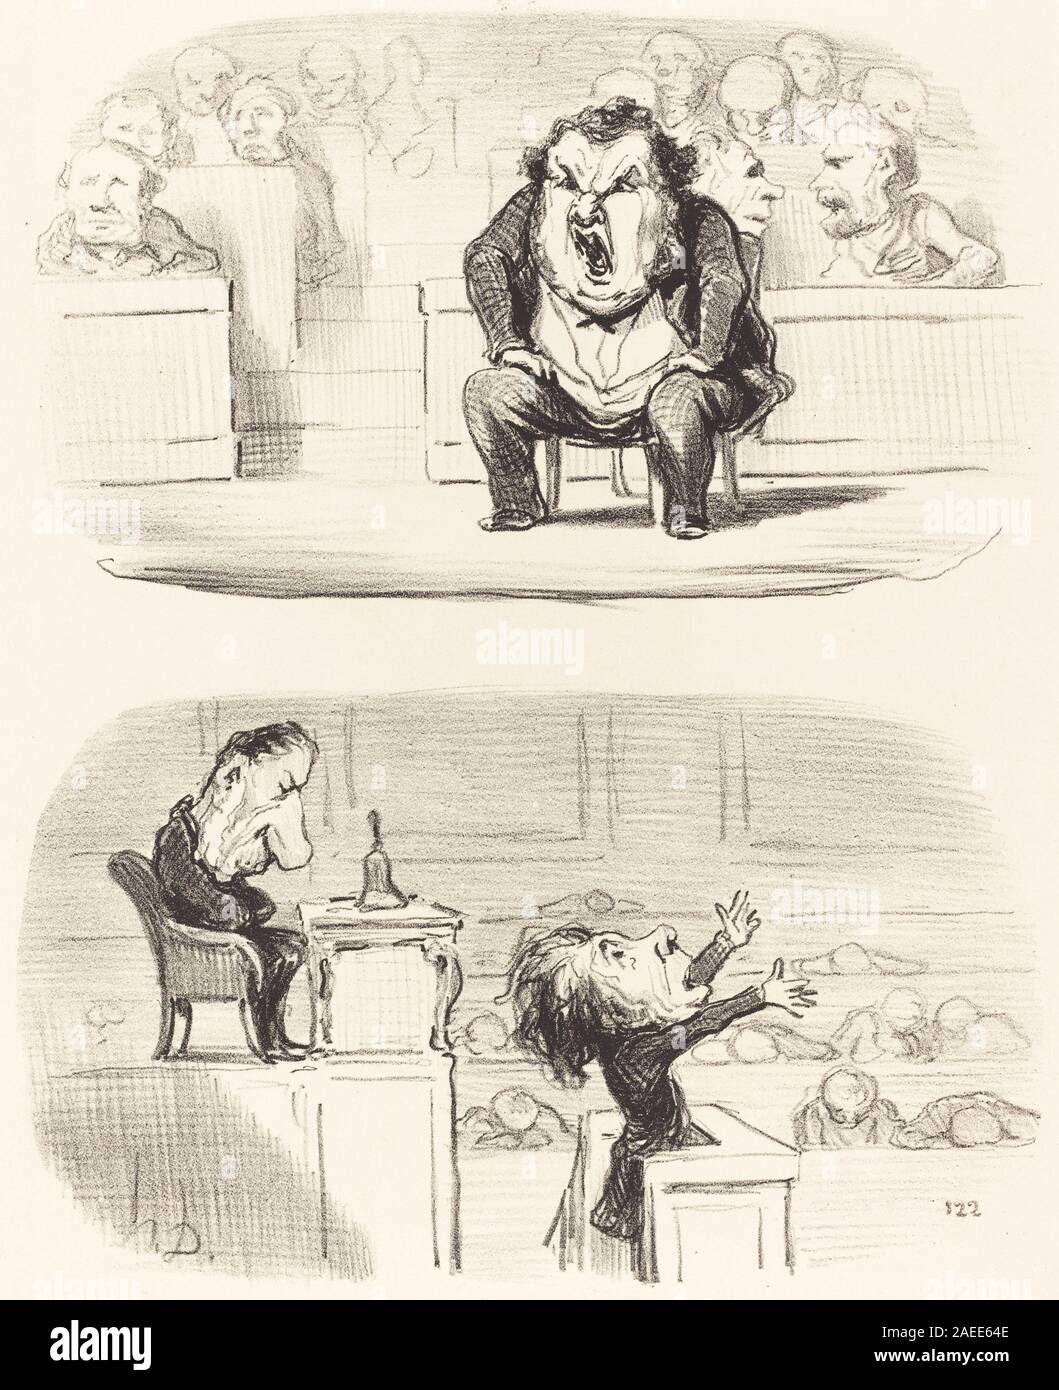 Honoré Daumier, Quand un orateur ennuyeux monte a la tribune, 1850 Quand un orateur ennuyeux monte a la tribune; 1850date Stock Photo